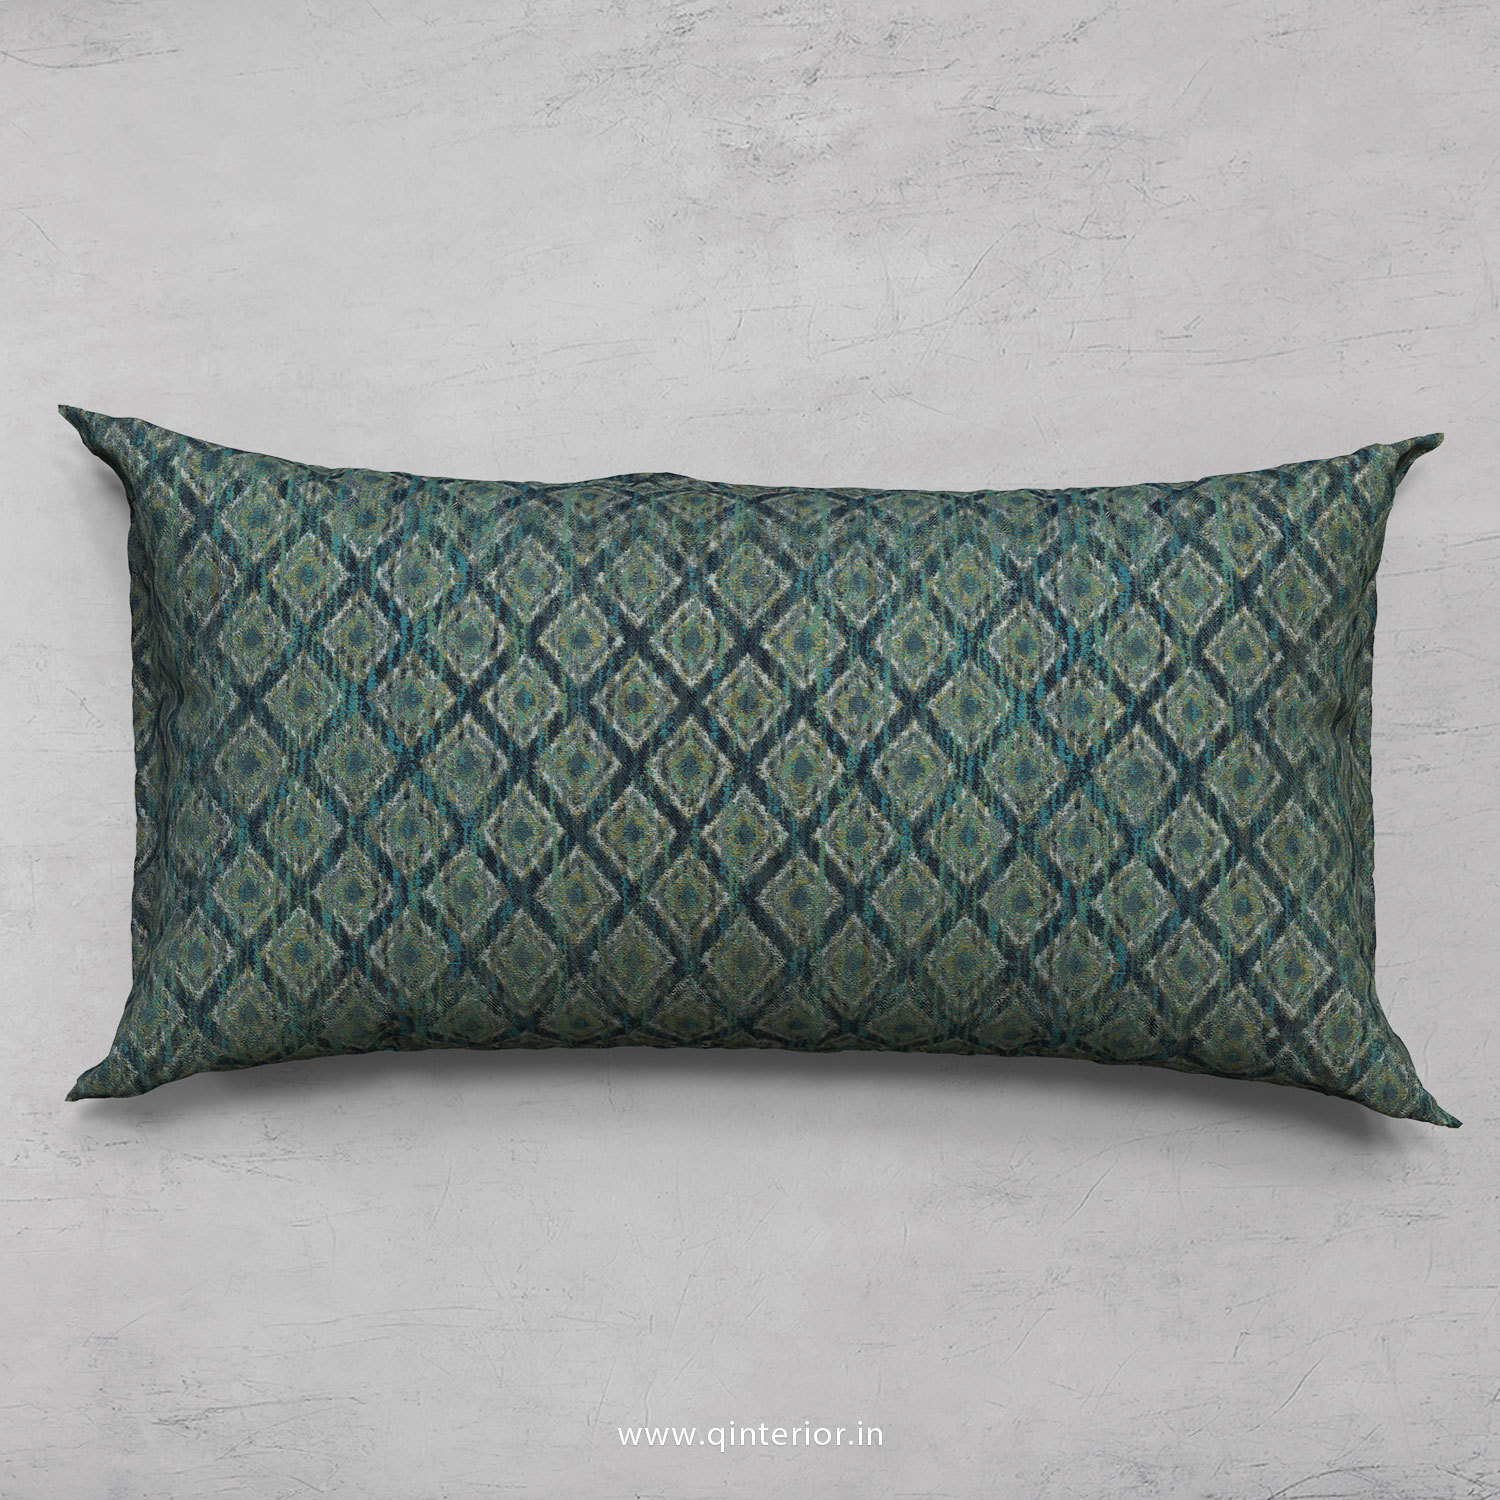 Cushion With Cushion Cover in Jacquard- CUS002 JQ26